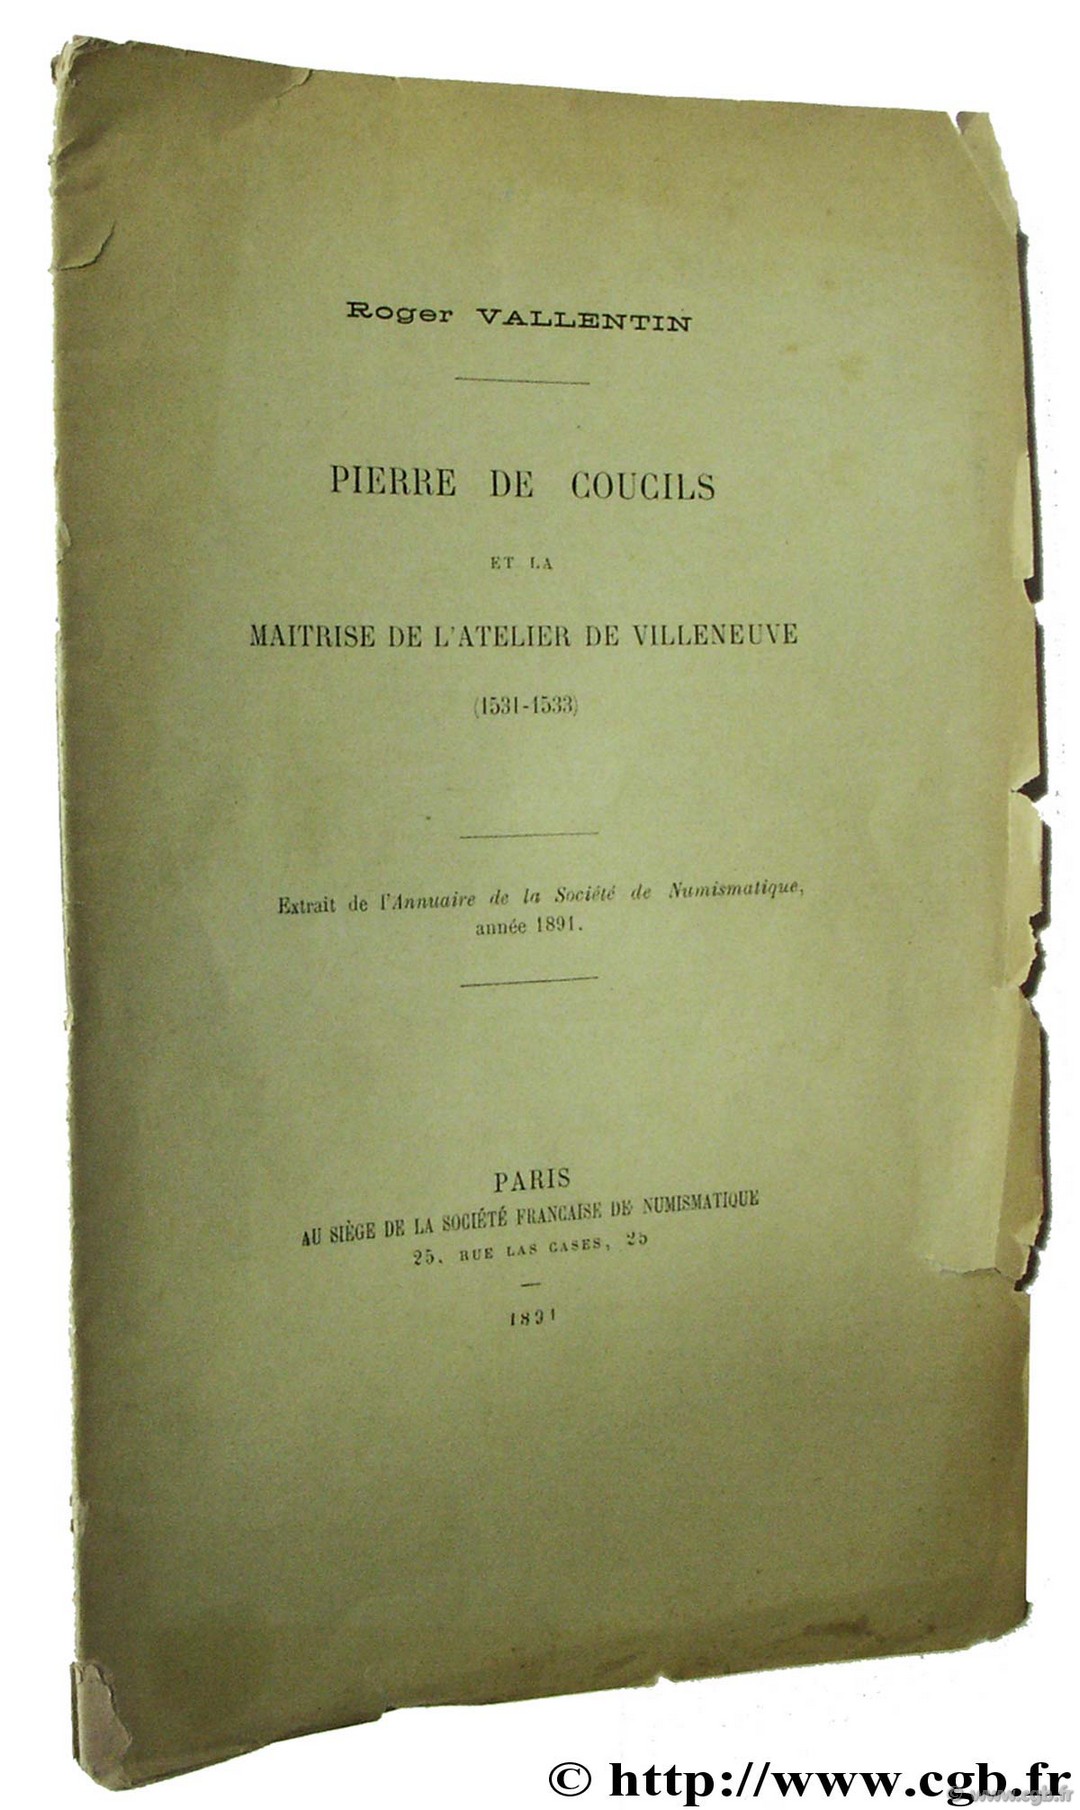 Pierre de Coucils et la maitrise de l atelier de Villeneuve (1531-1533) VALLENTIN R.